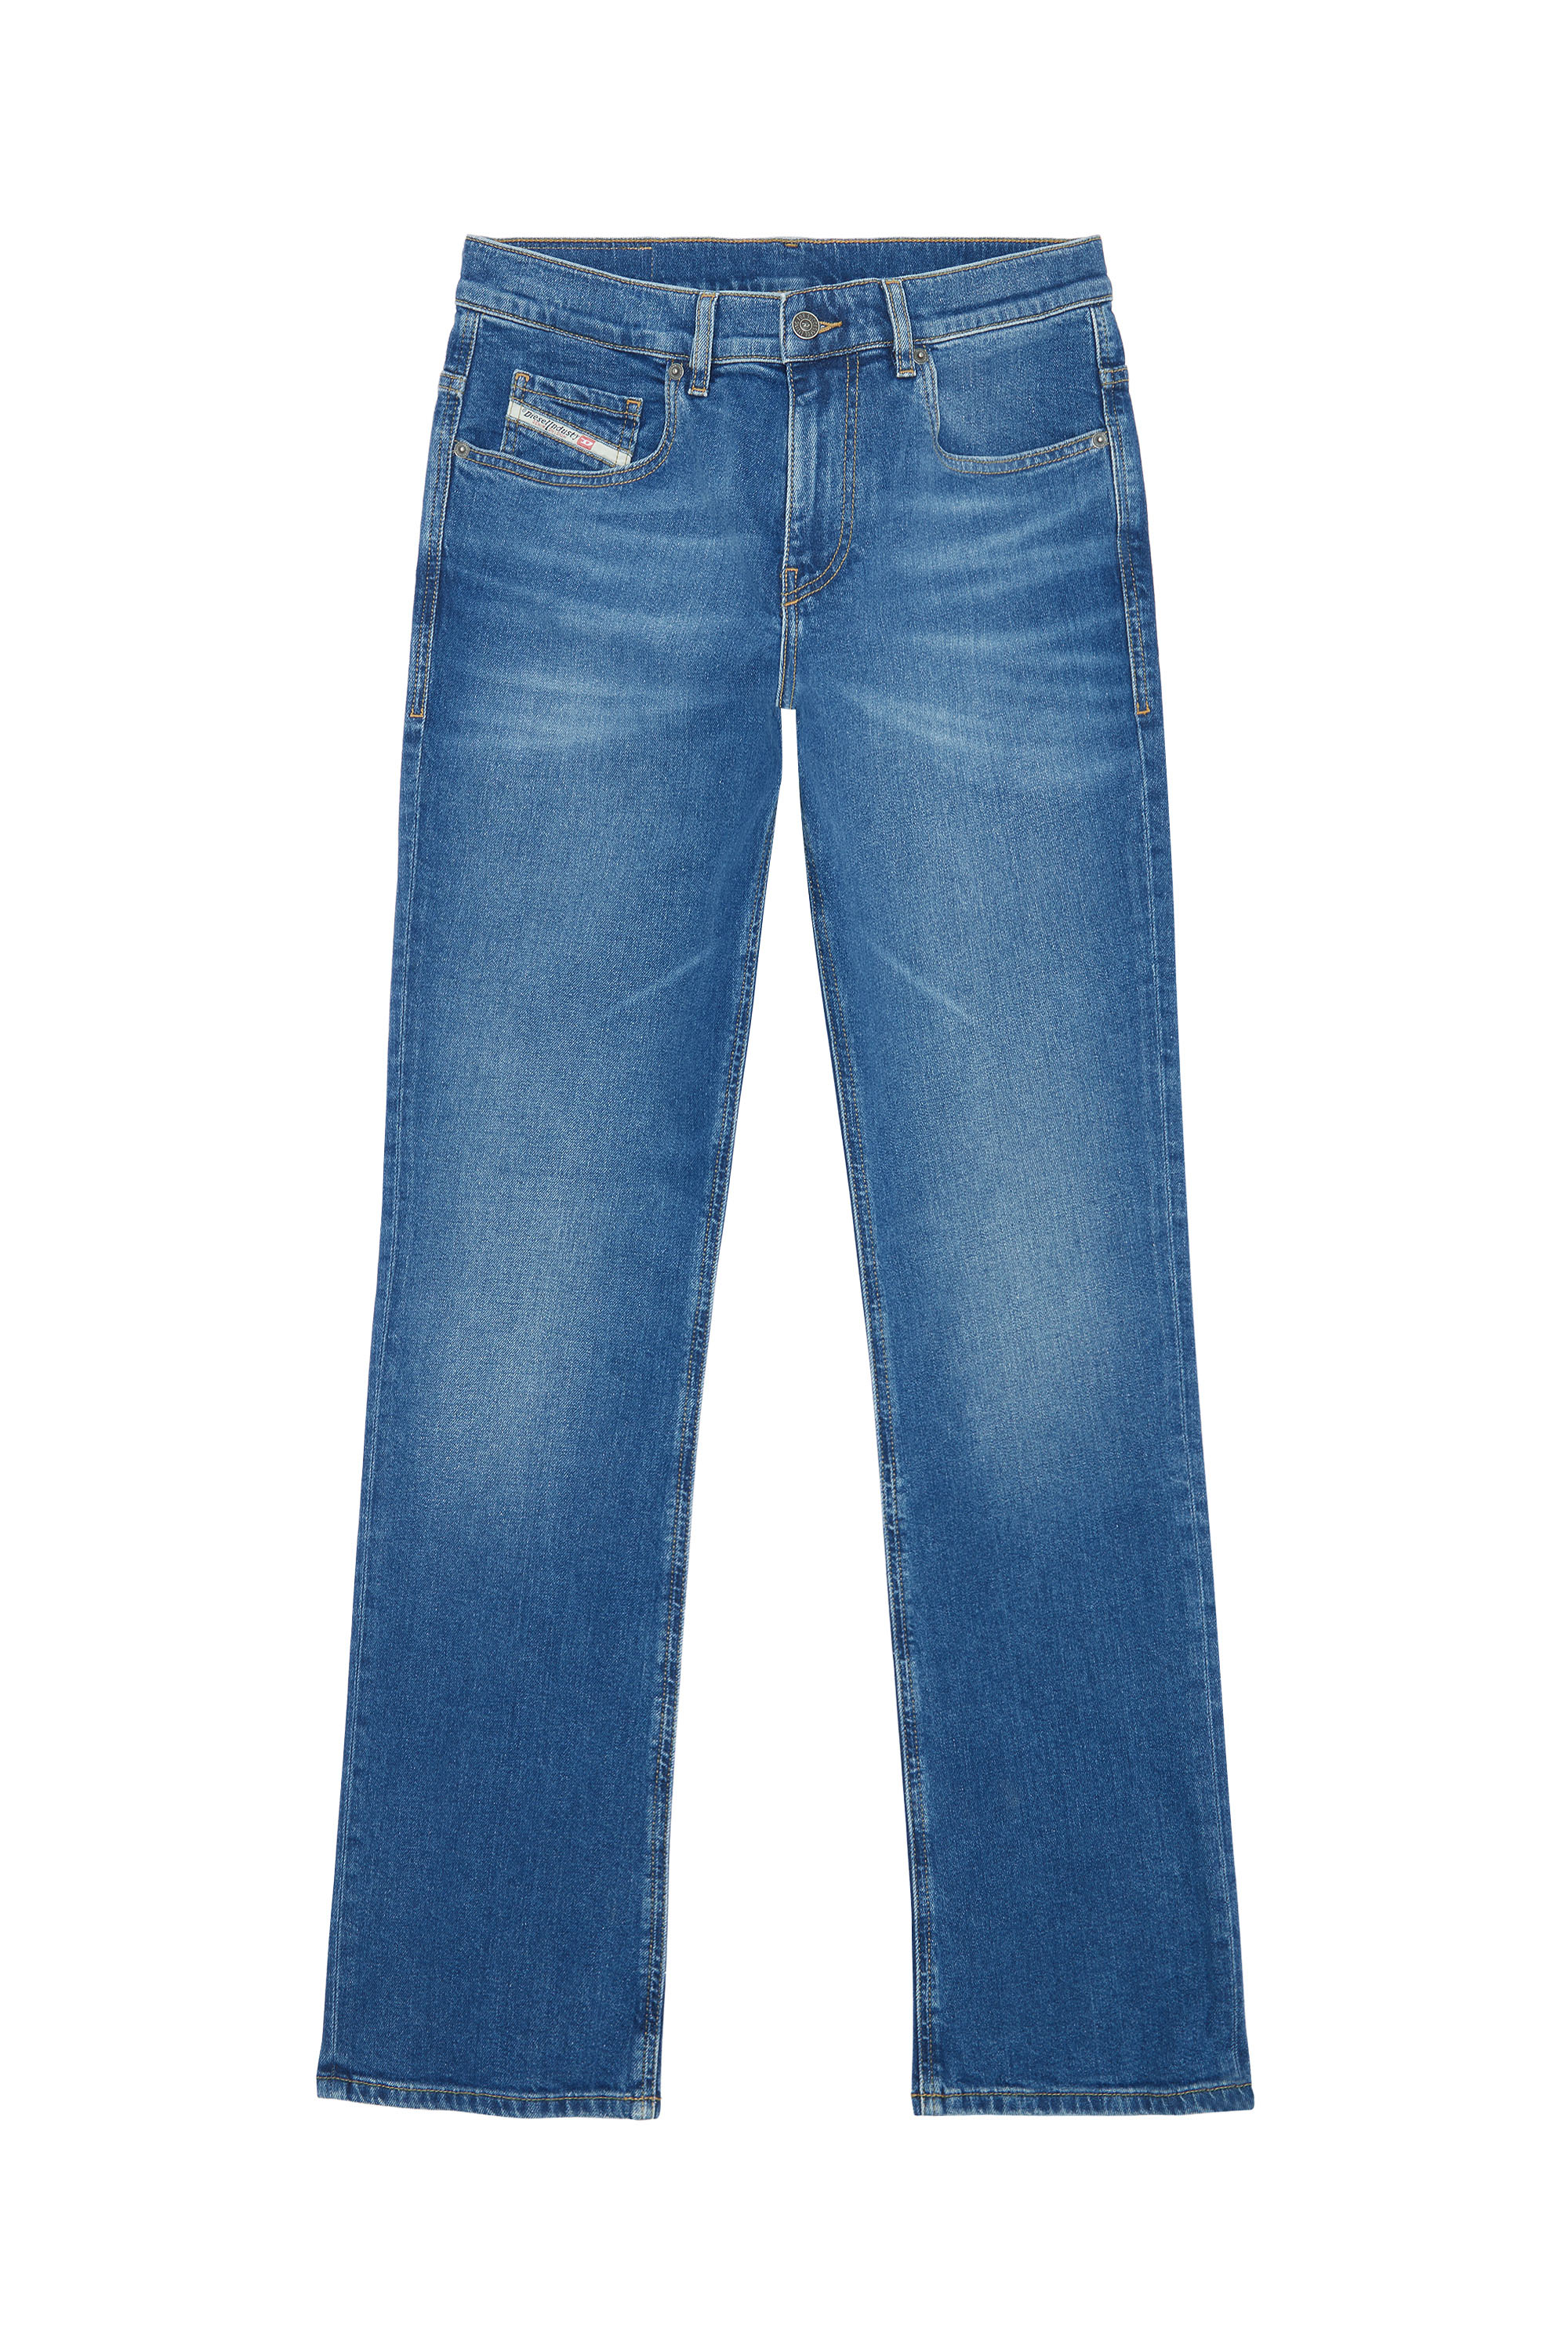 Diesel - Bootcut Jeans 2021 D-Vocs E9A80, Medium blue - Image 5